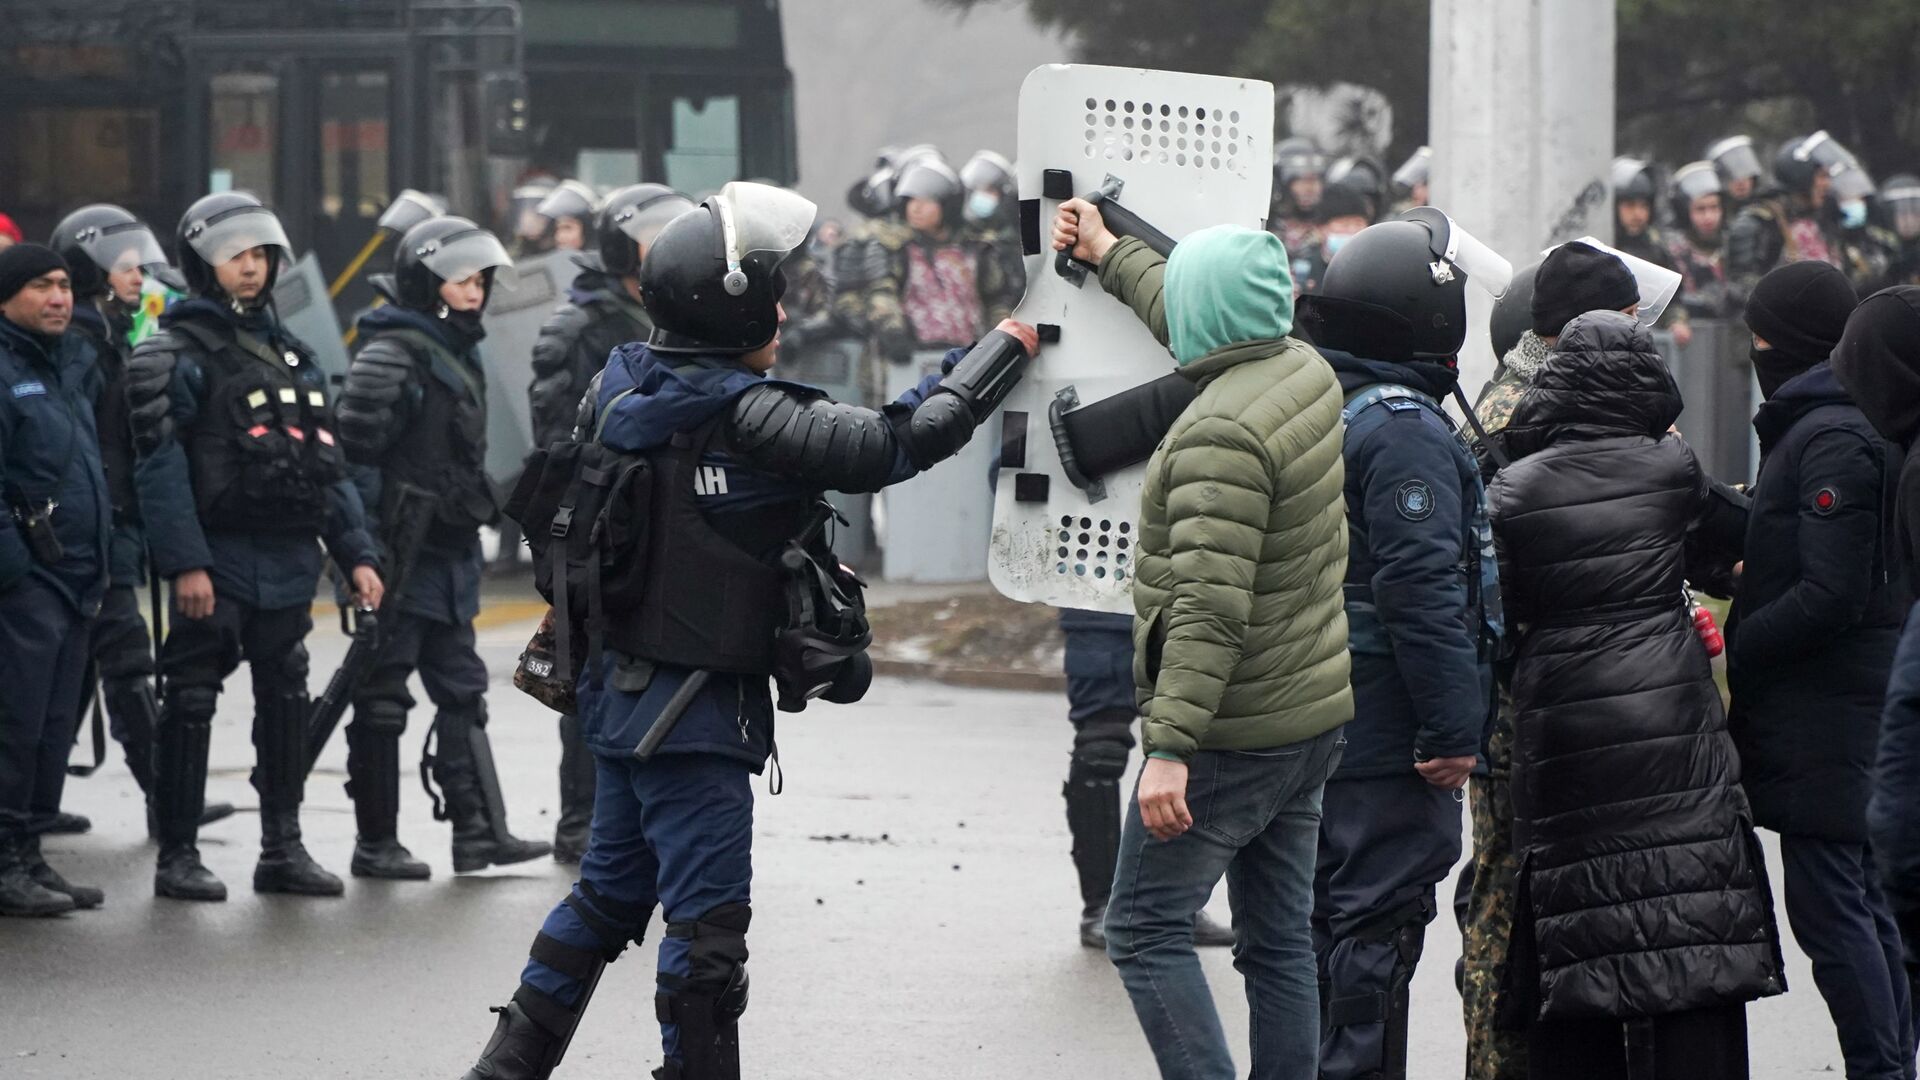 Демонстрант возвращает щит сотруднику ОМОНа во время акции протеста в Алматы, Казахстан, в среду, 5 января 2022 г.  - Sputnik Қазақстан, 1920, 10.01.2022